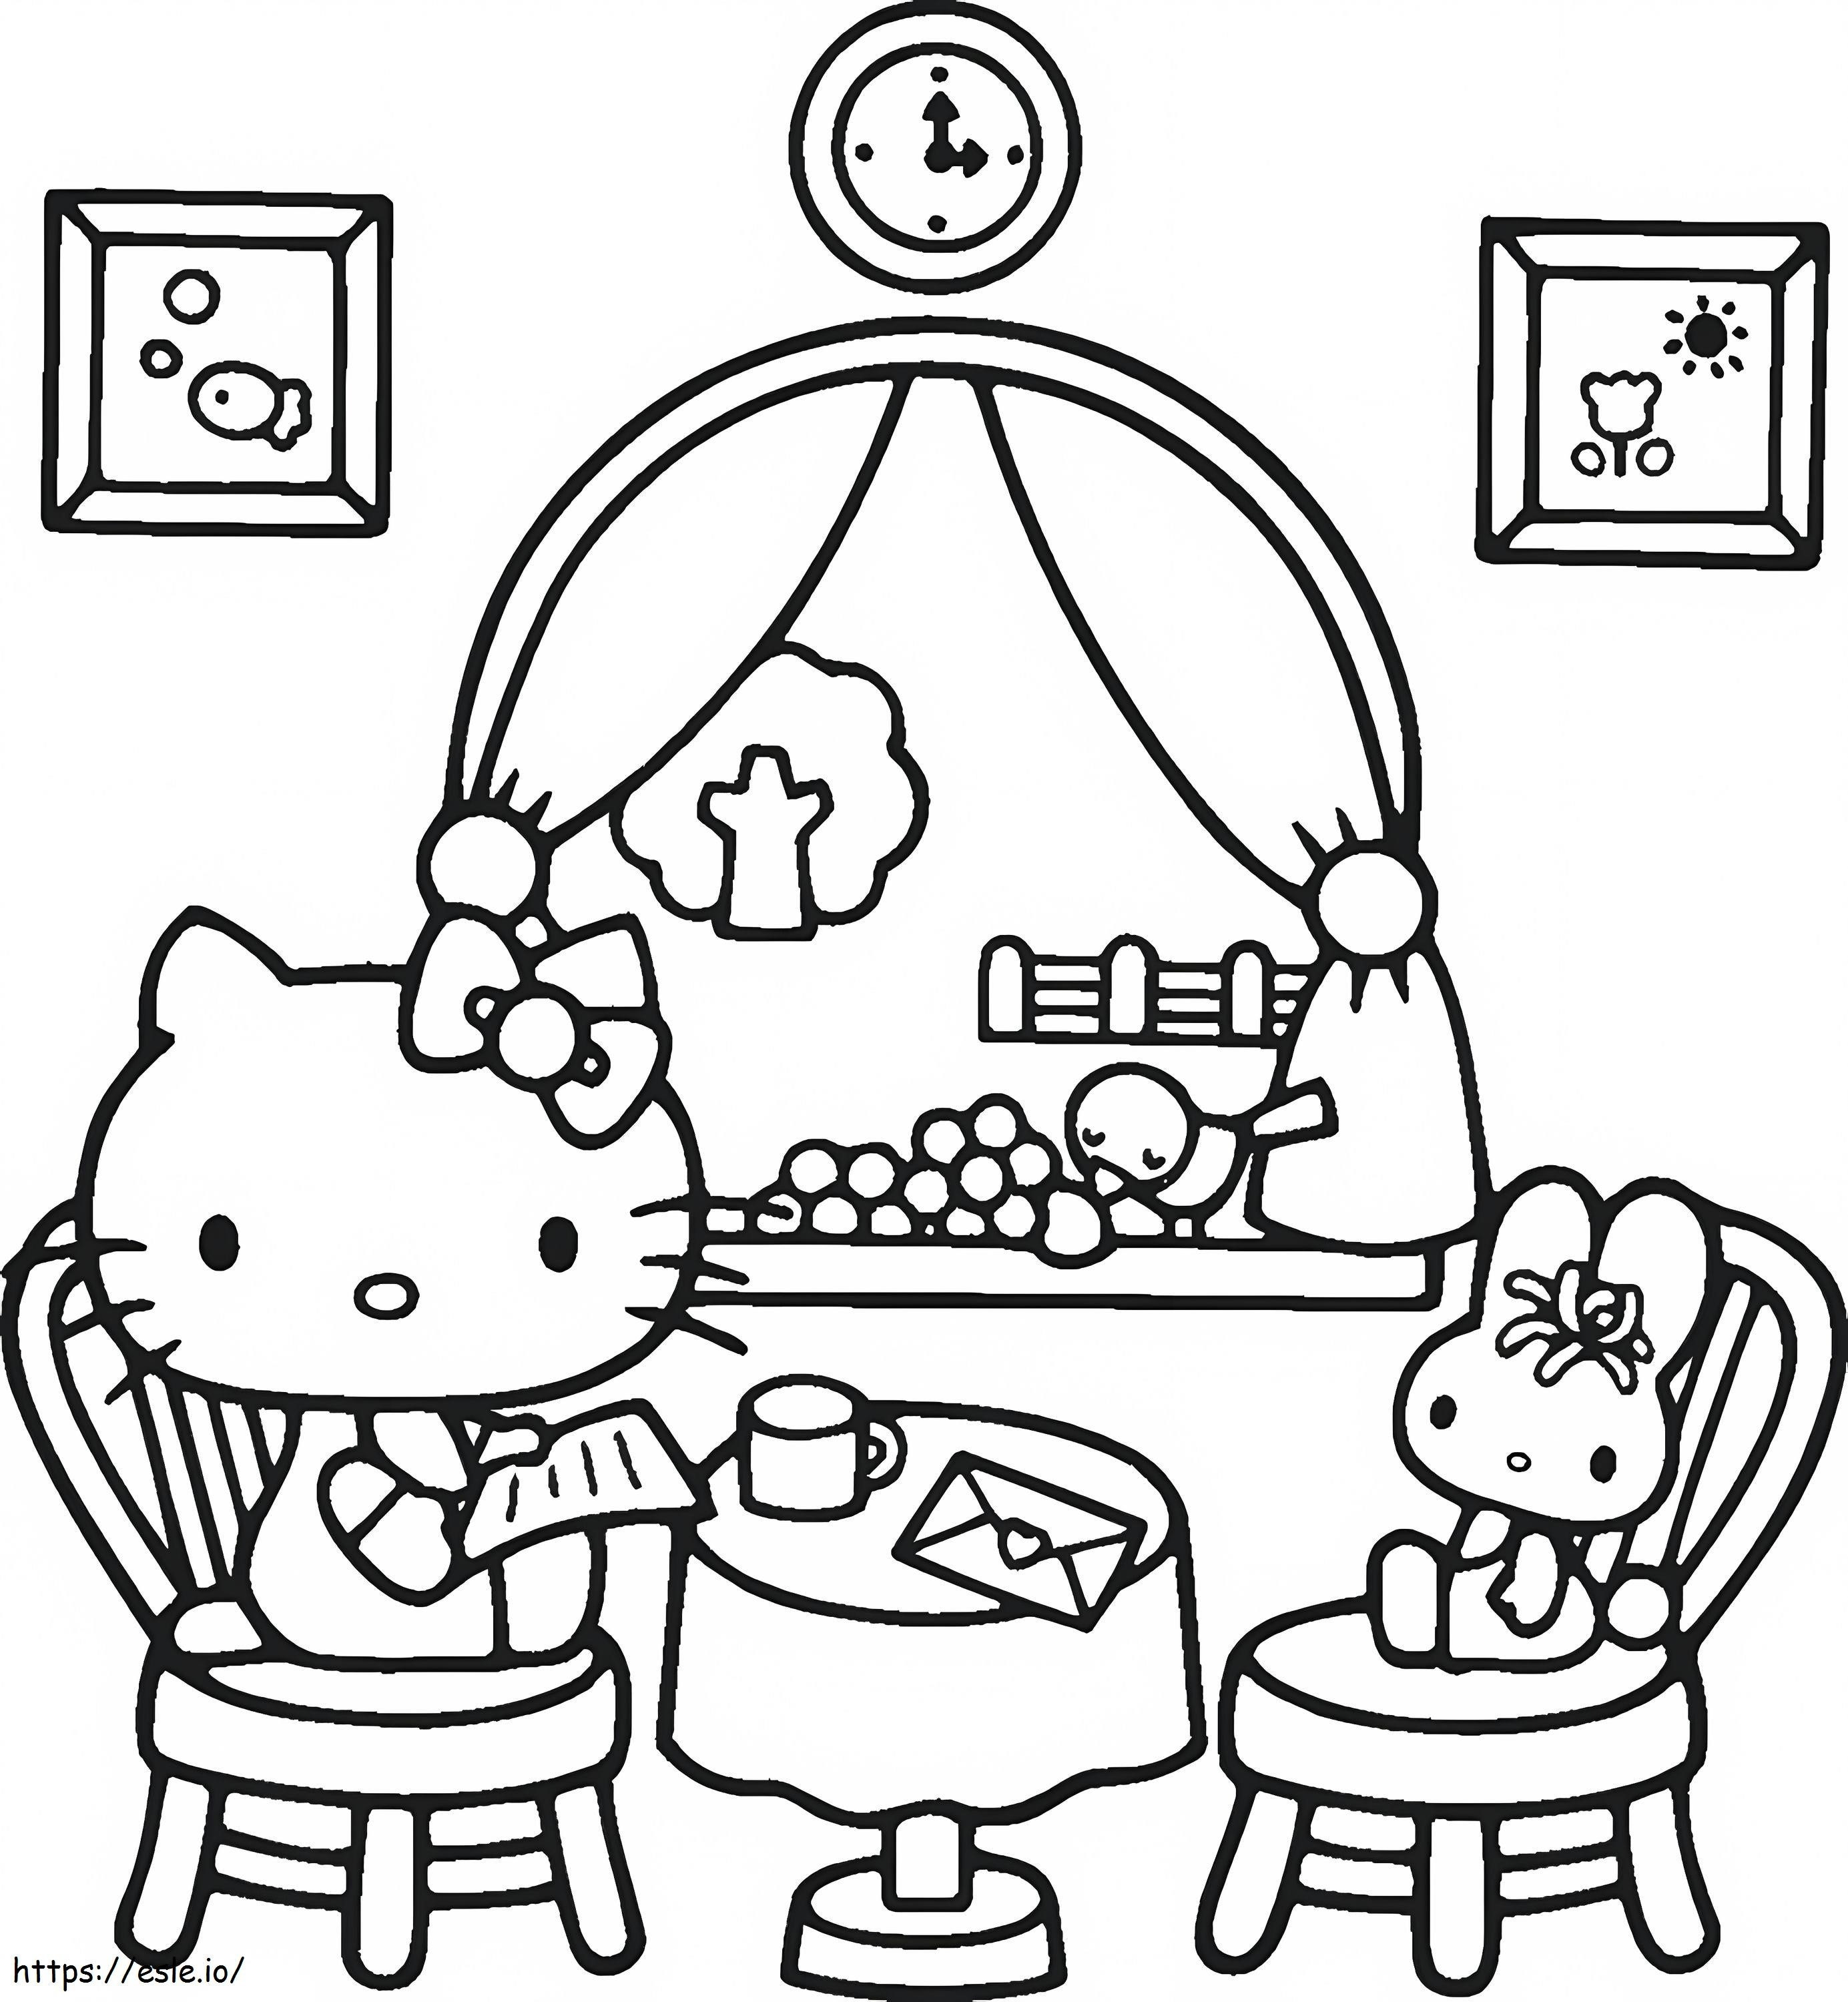 1539942005 Hoe teken je gratis Hello Kitty-download kleurplaat kleurplaat